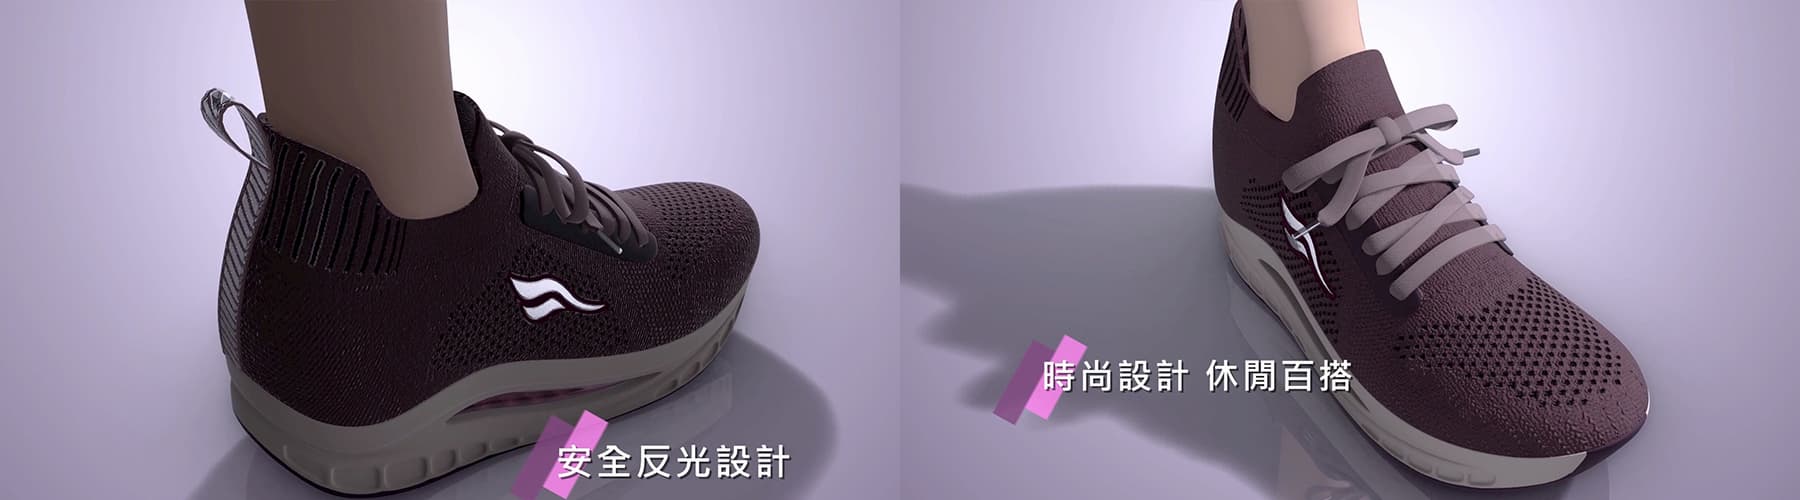 HANGTEN足弓專利休閒鞋3D動畫影片-2